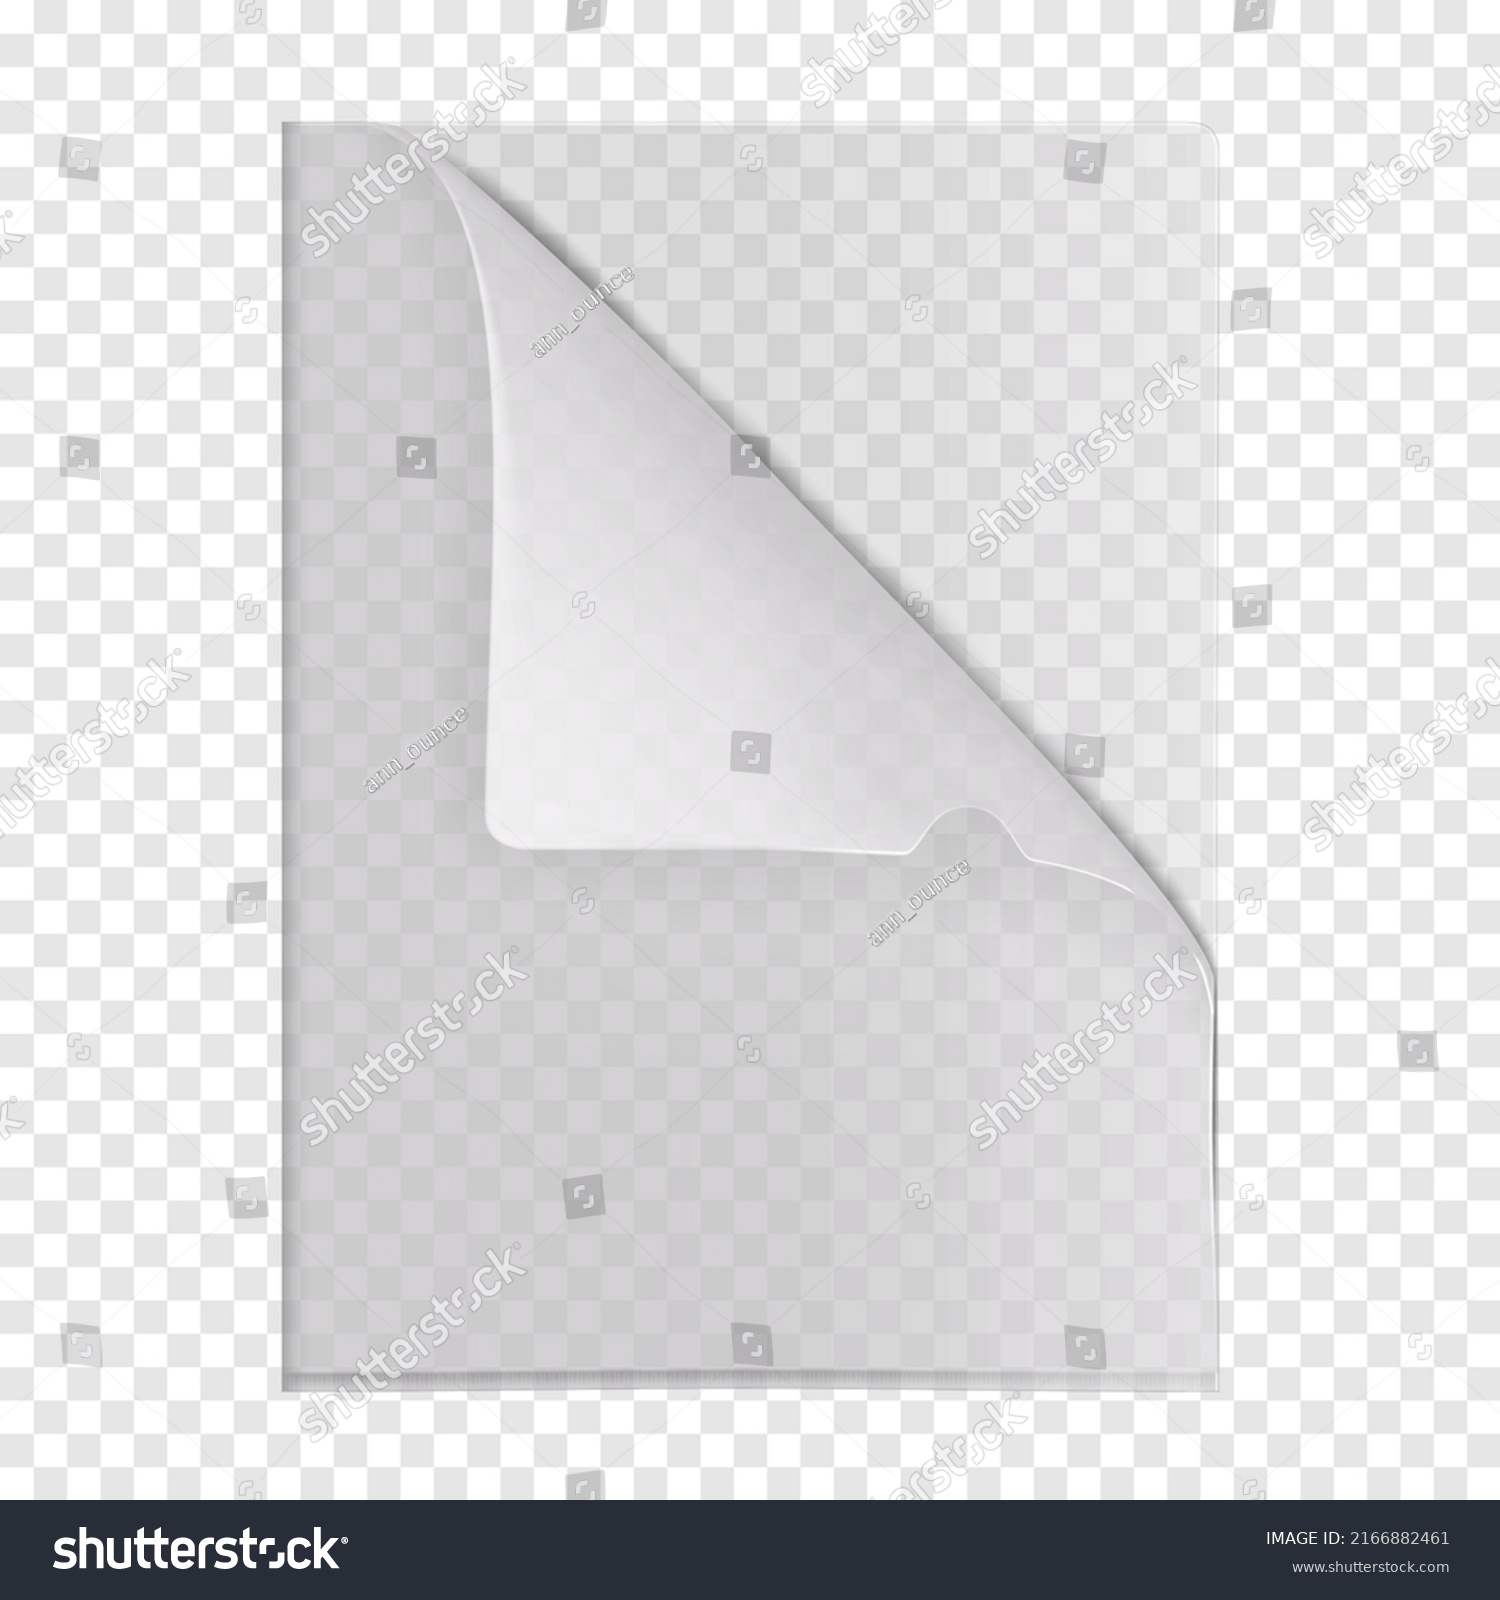 SVG of Clear L-shape plastic file folder pocket on transparent background realistic mockup. PVC document sleeve jacket with folded corner vector mock-up svg